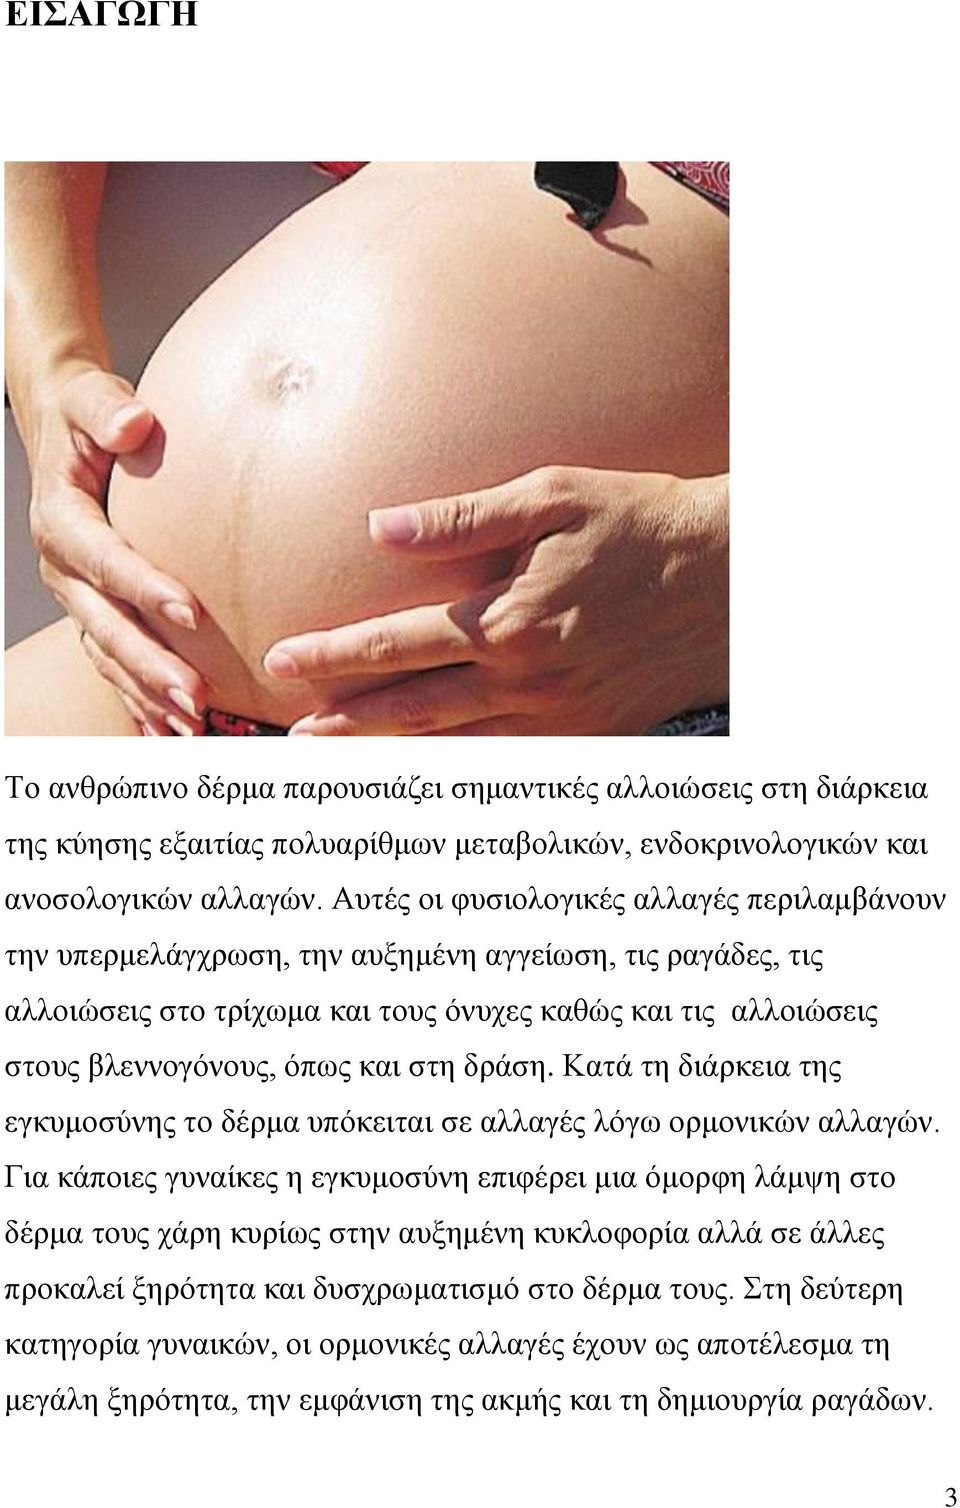 και στη δράση. Κατά τη διάρκεια της εγκυμοσύνης το δέρμα υπόκειται σε αλλαγές λόγω ορμονικών αλλαγών.